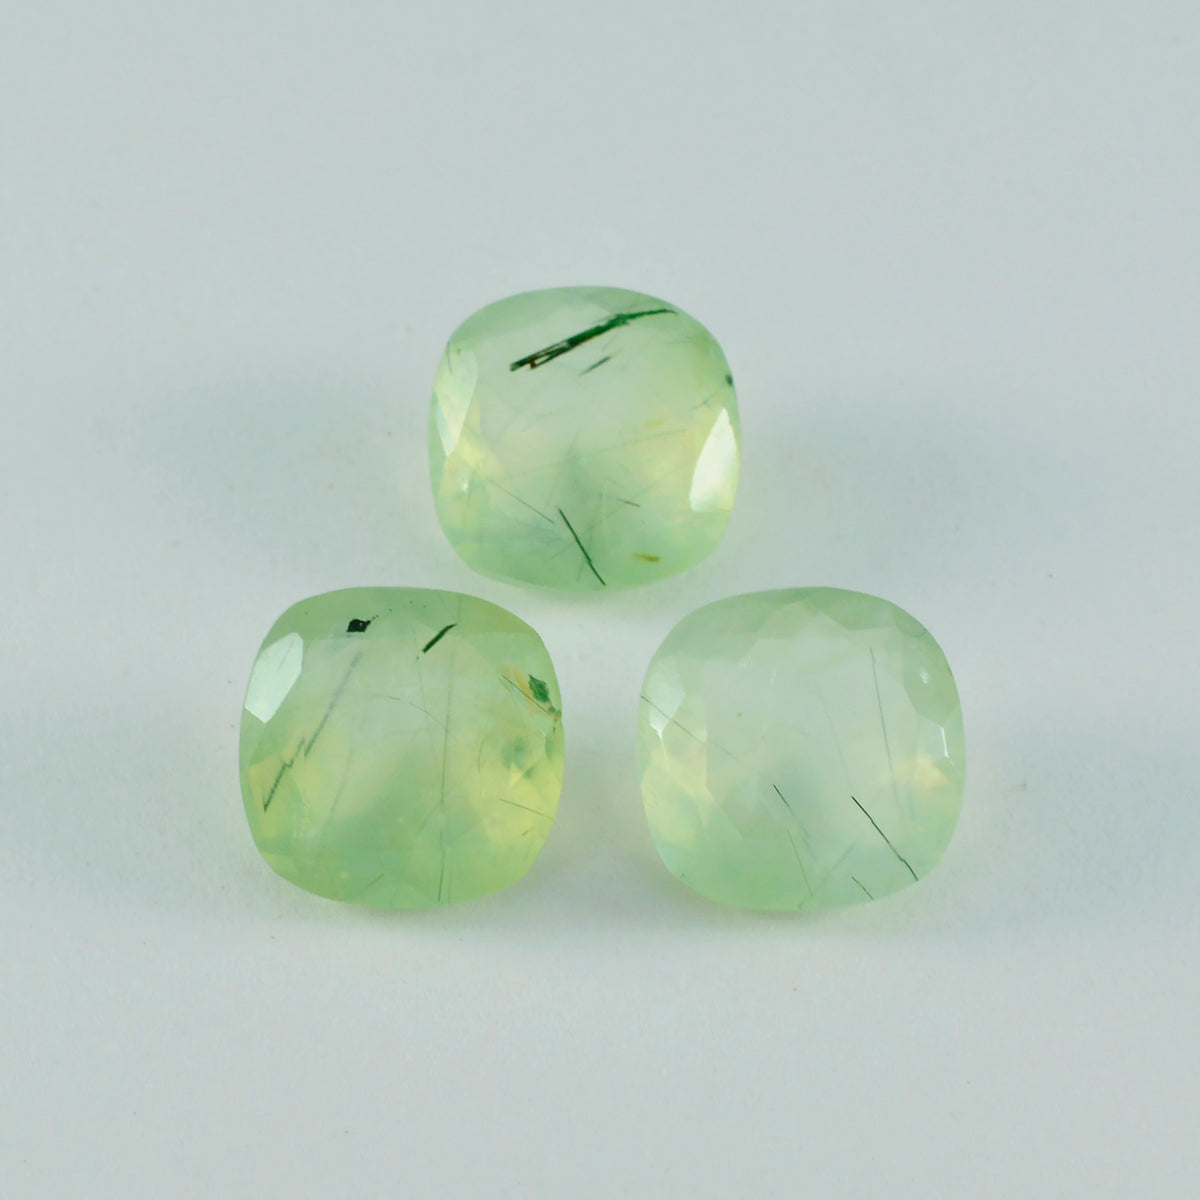 riyogems 1 шт. зеленый пренит граненый 12x12 мм в форме подушки, довольно качественный сыпучий драгоценный камень